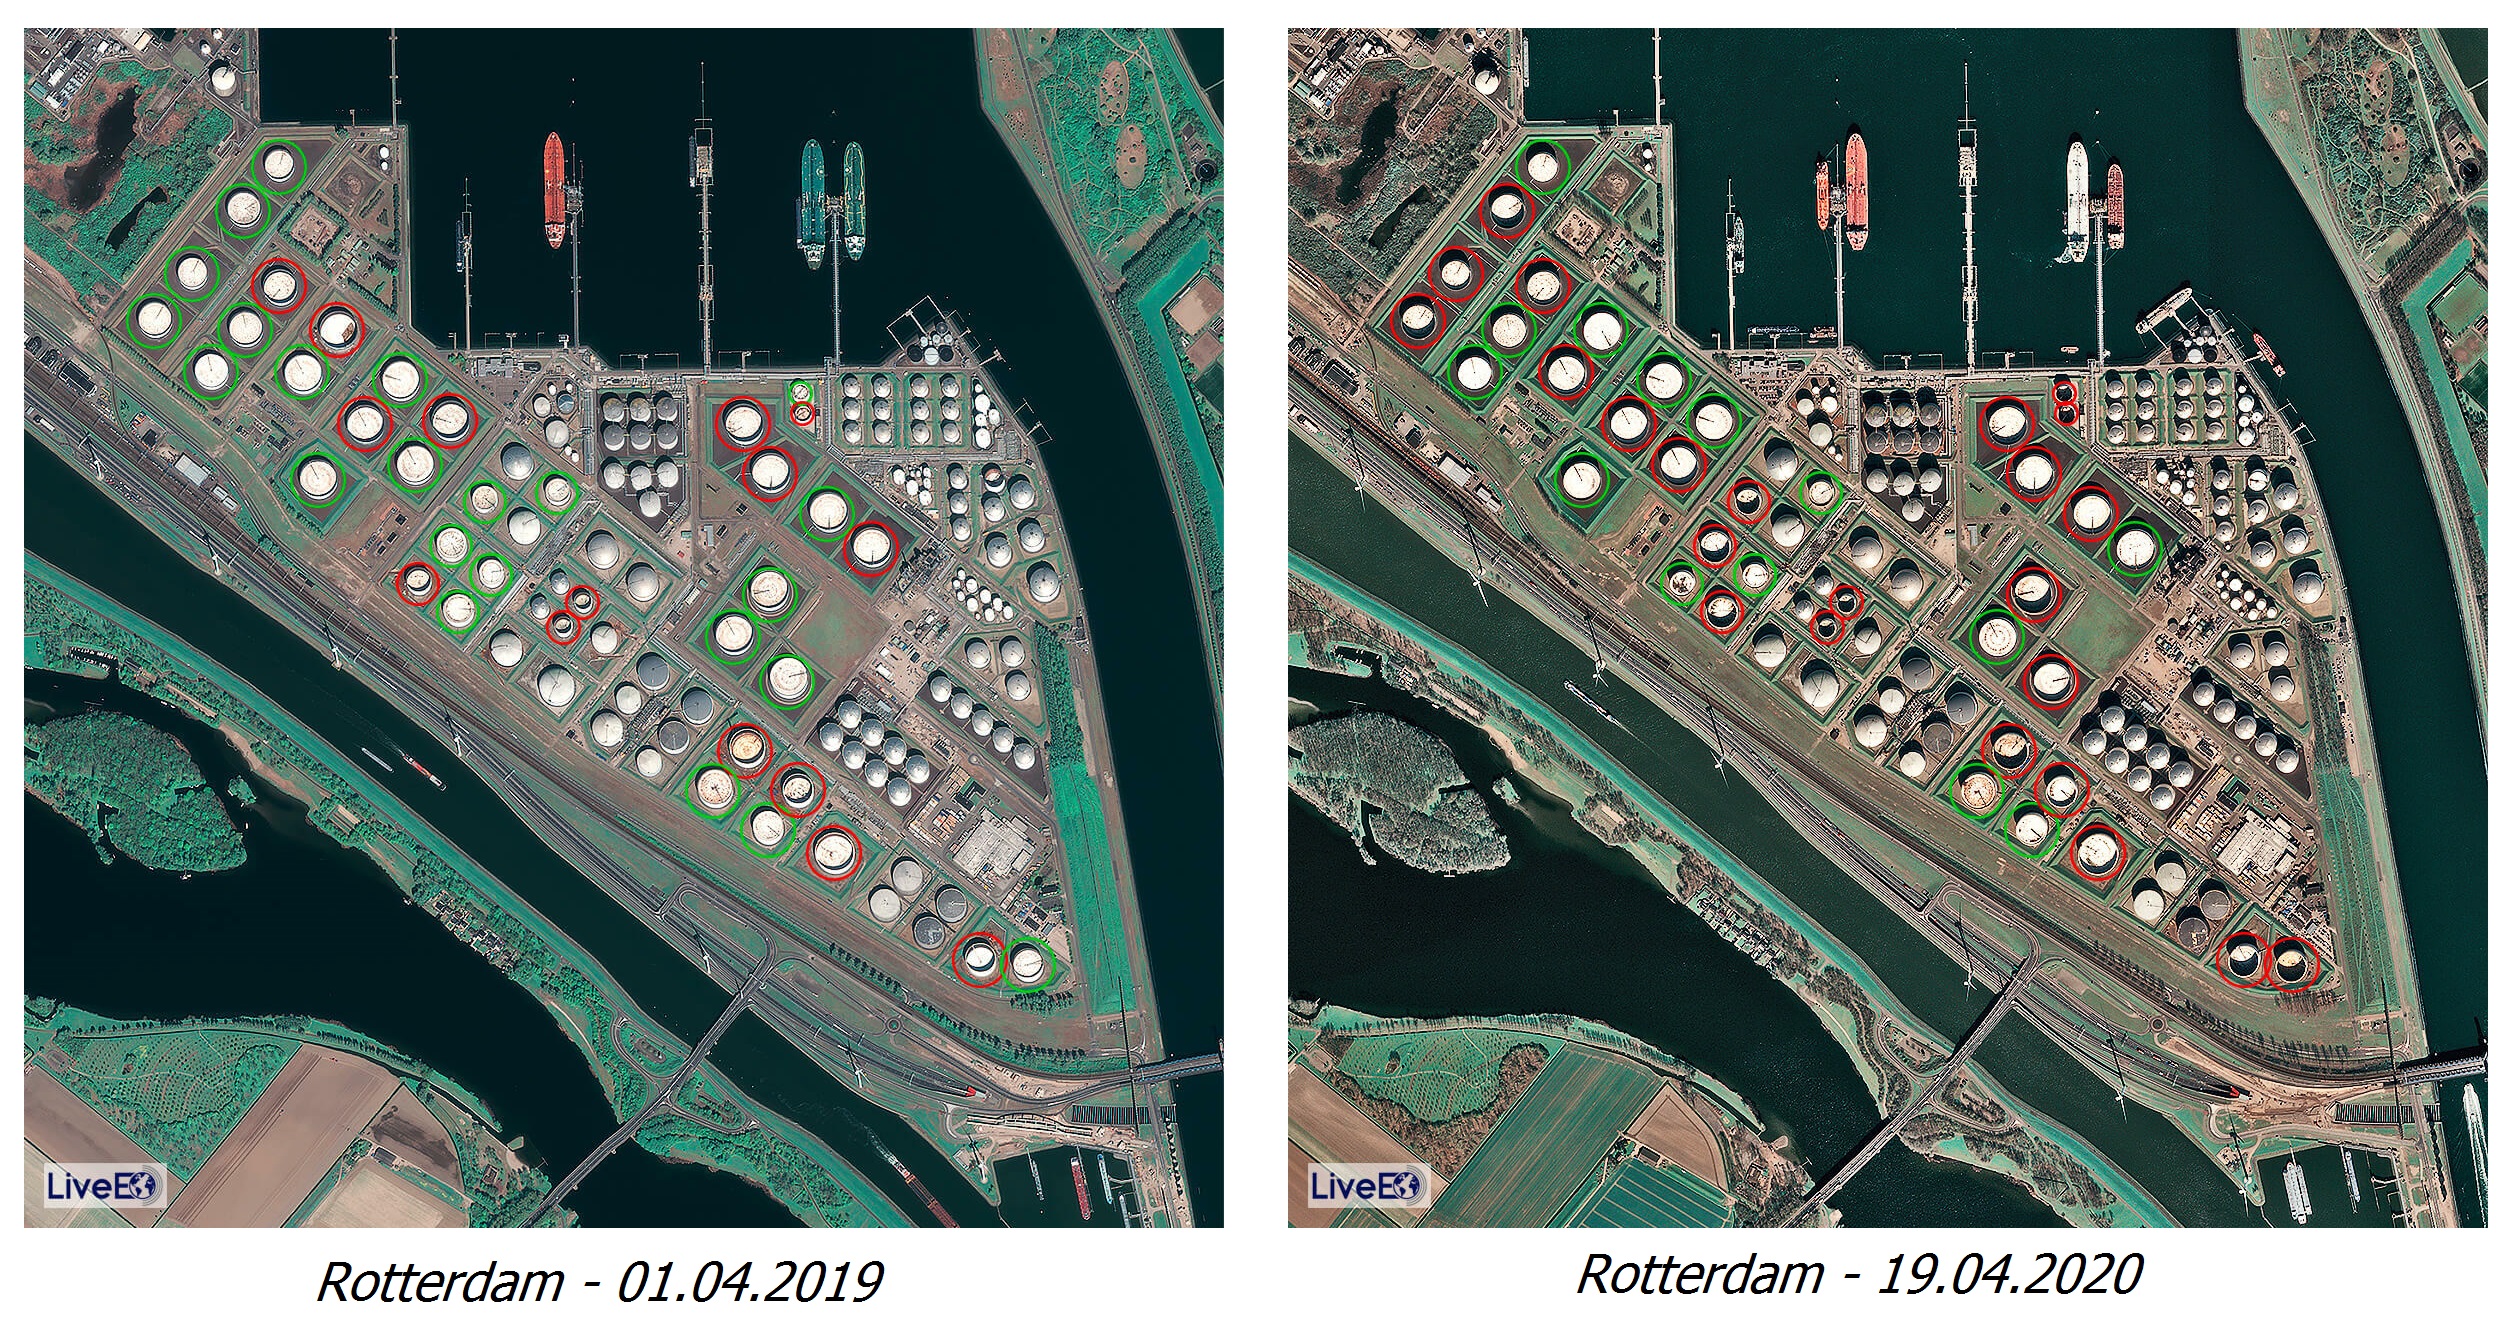 Ảnh vệ tinh chụp cảng Rotterdam với 38 bể dầu Silo tại hai thời điểm trước và trong dịch Covid-19. Bể khoanh màu đỏ là những bể còn sức chứa, trong khi đó bể khoanh màu xanh là các bể đã đầy. | Nguồn: LiveEO/UP42